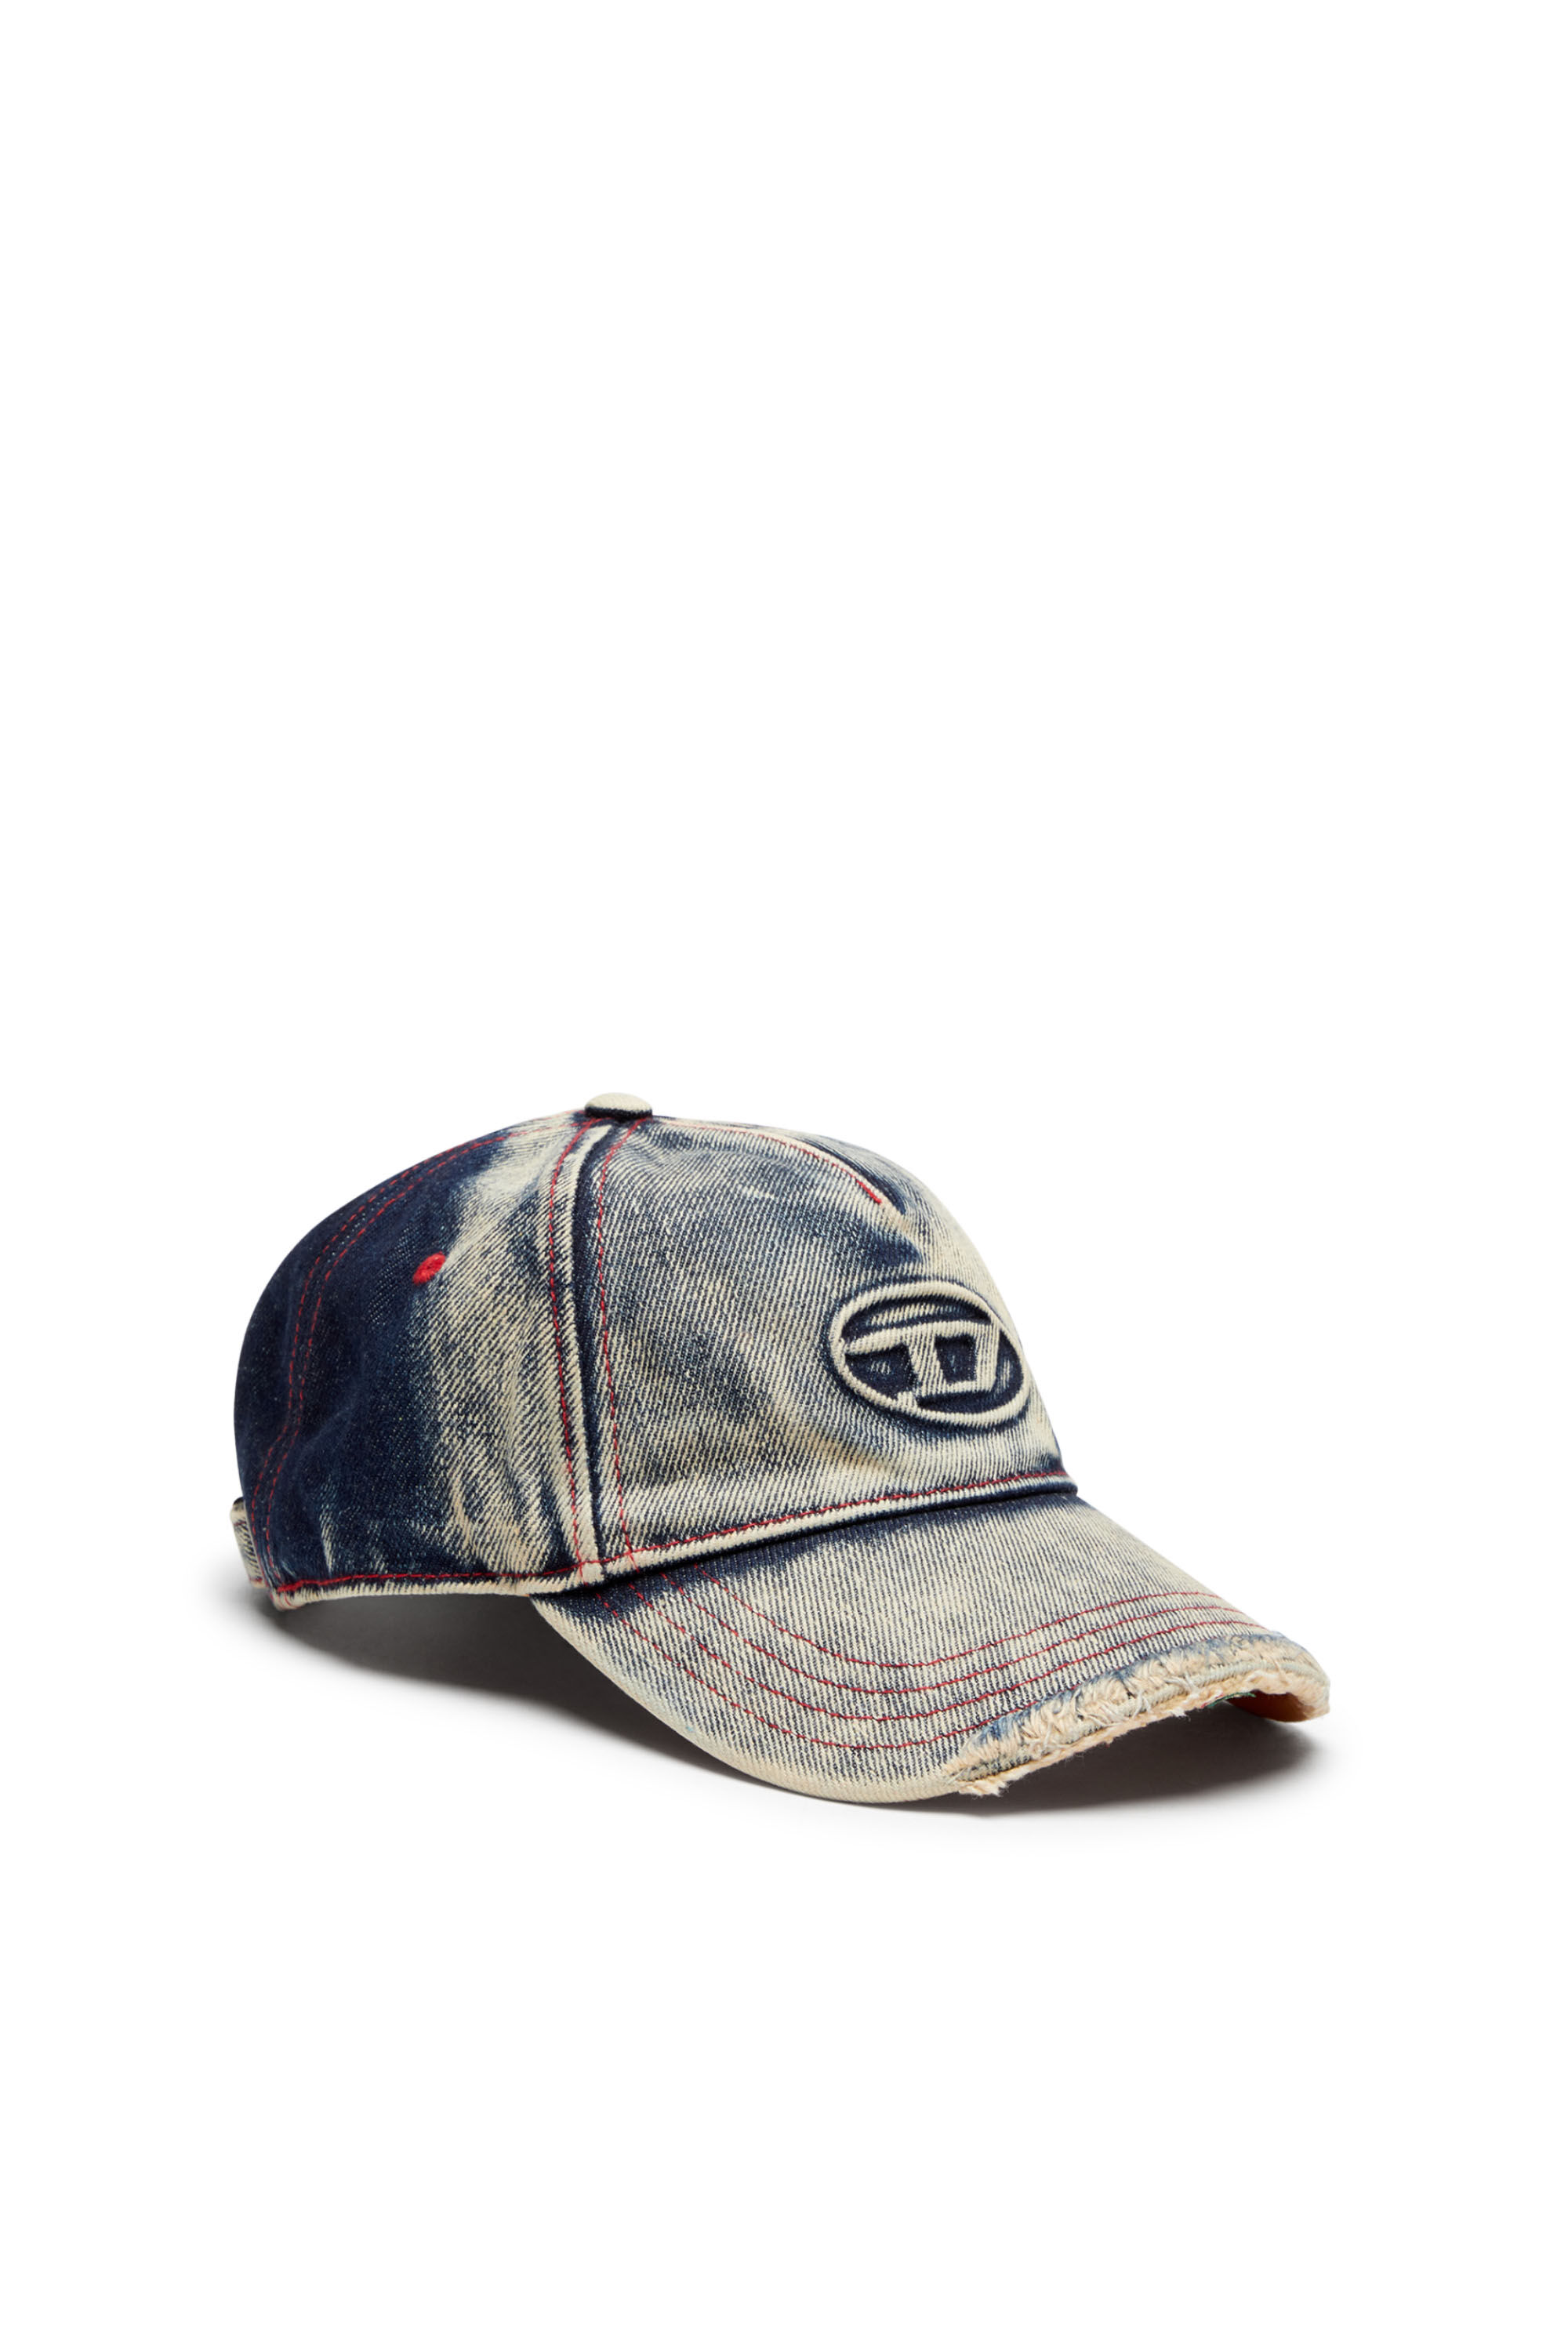 新発売DIESEL C-Seymon Denim Bleached Cap 帽子